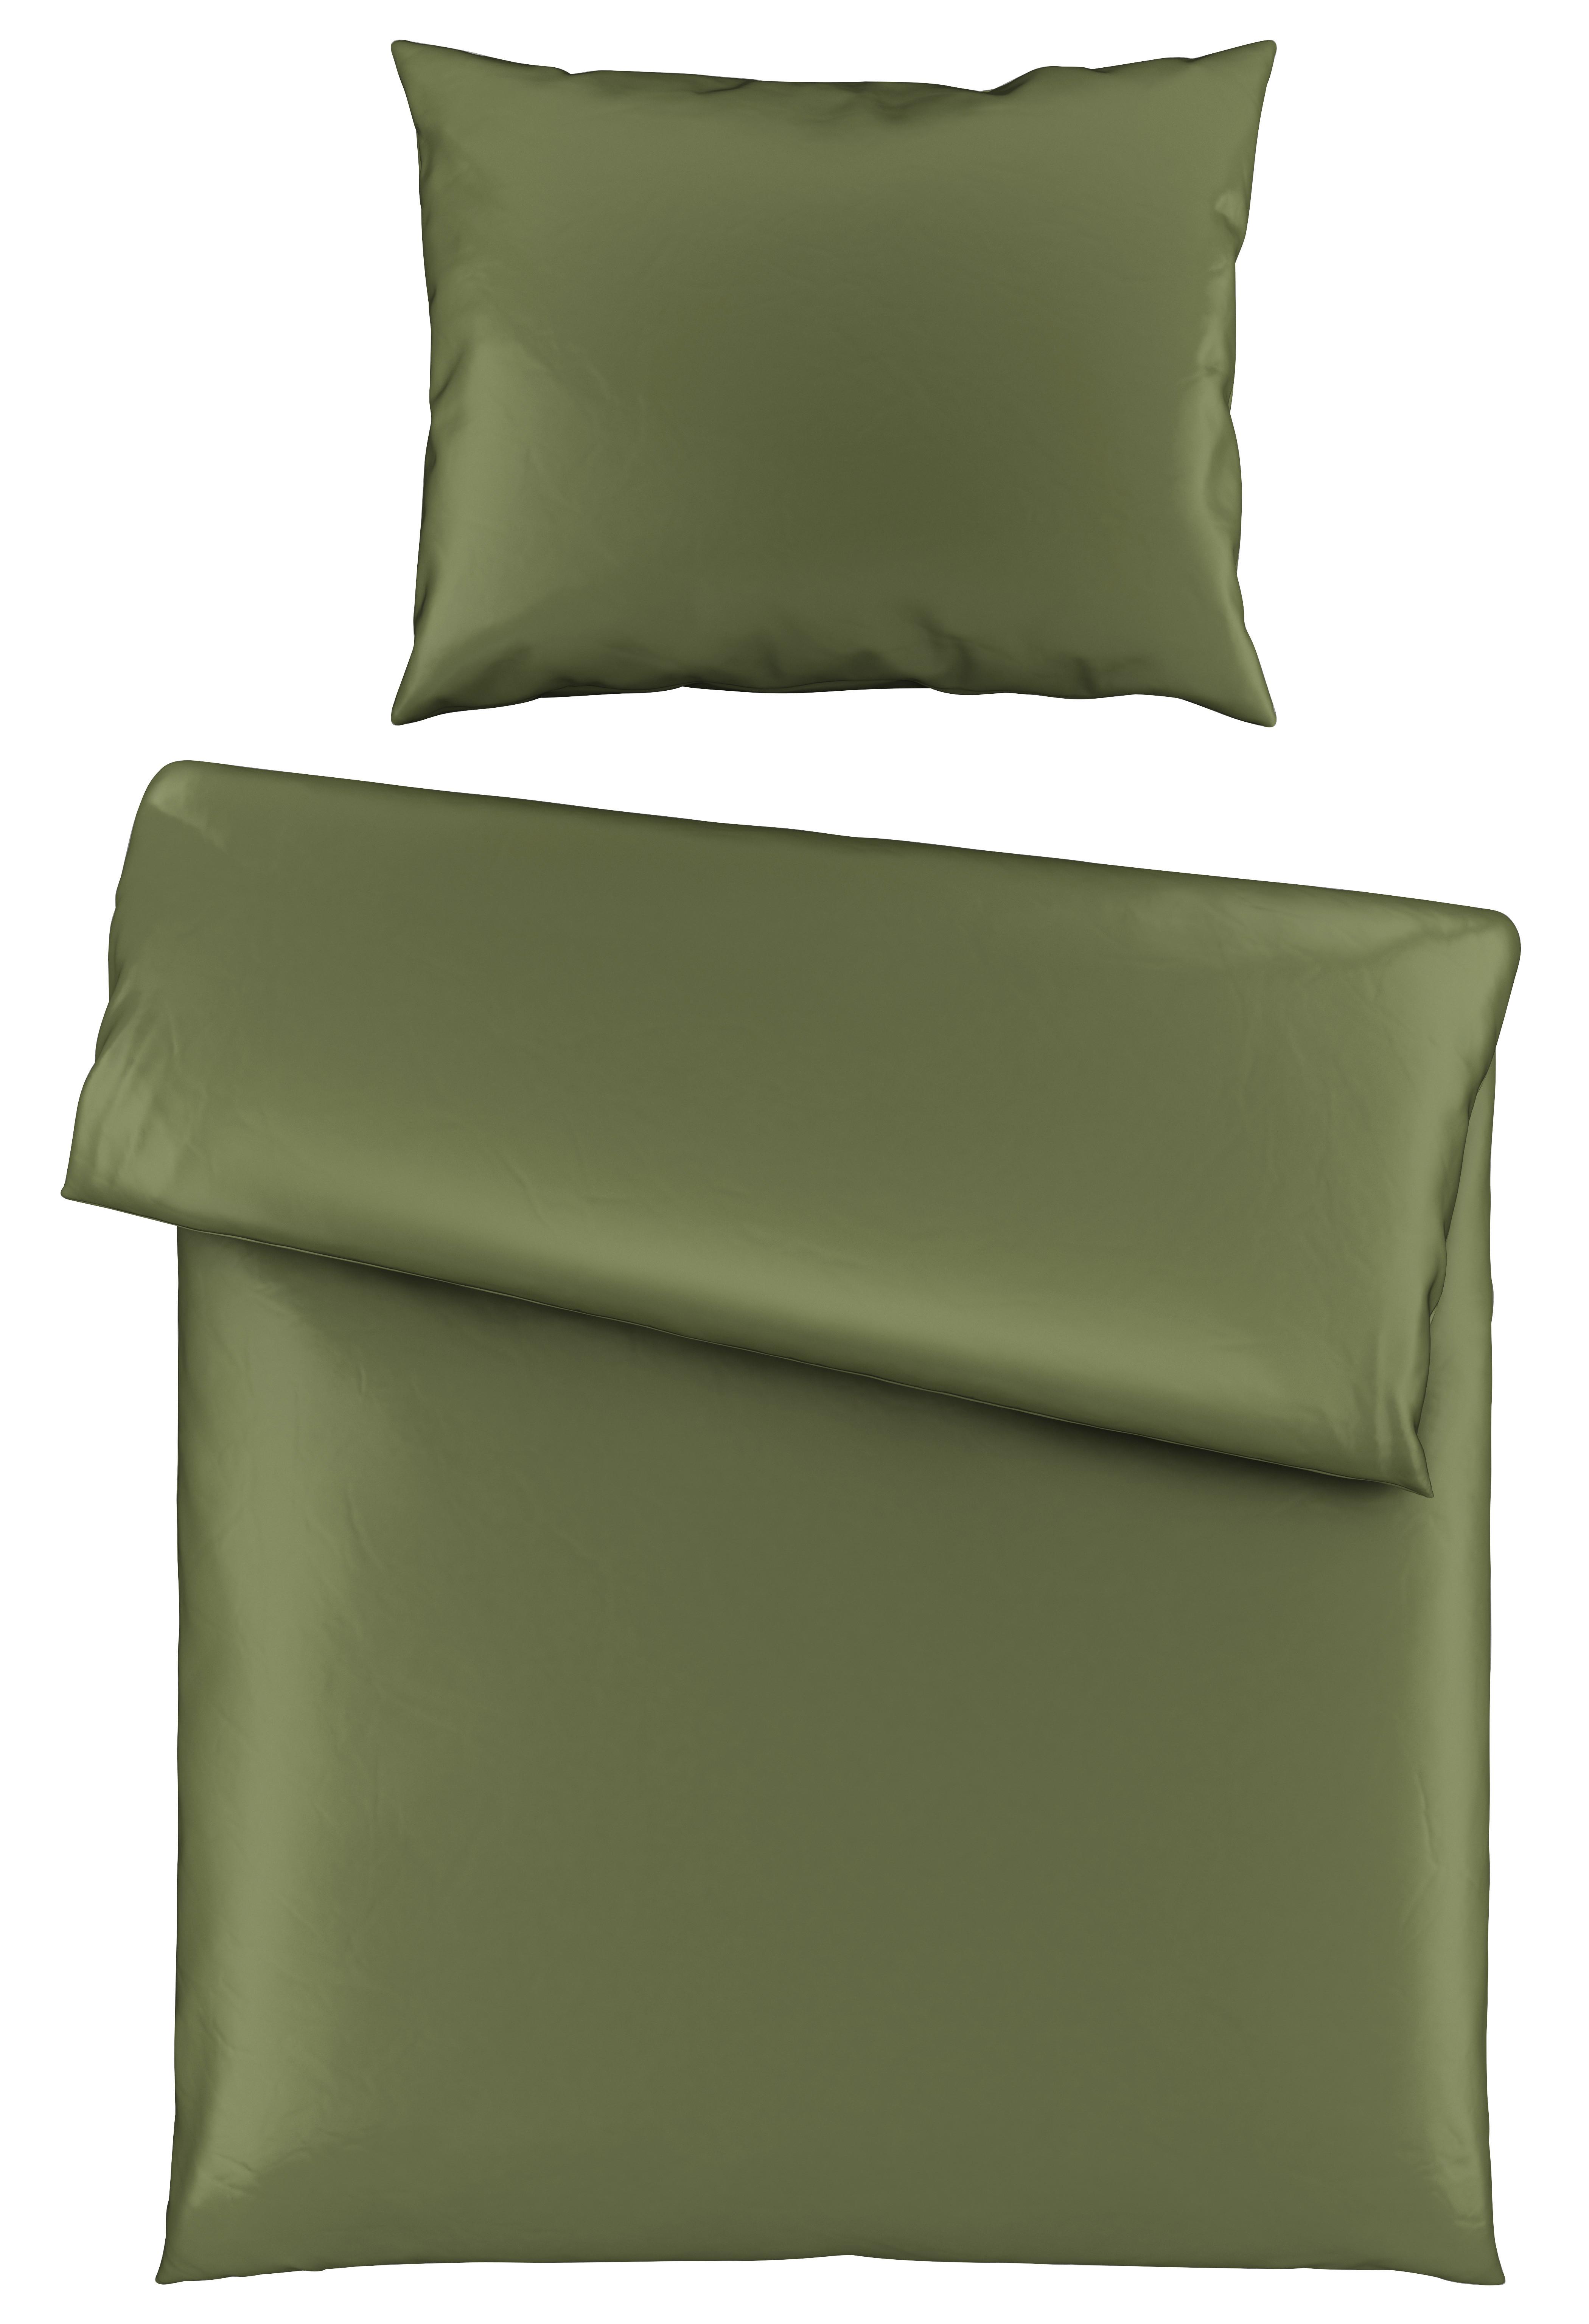 Povlečení Alex Uni, 140/200cm, Zelená - olivově zelená, Moderní, textil (140/200cm) - Premium Living